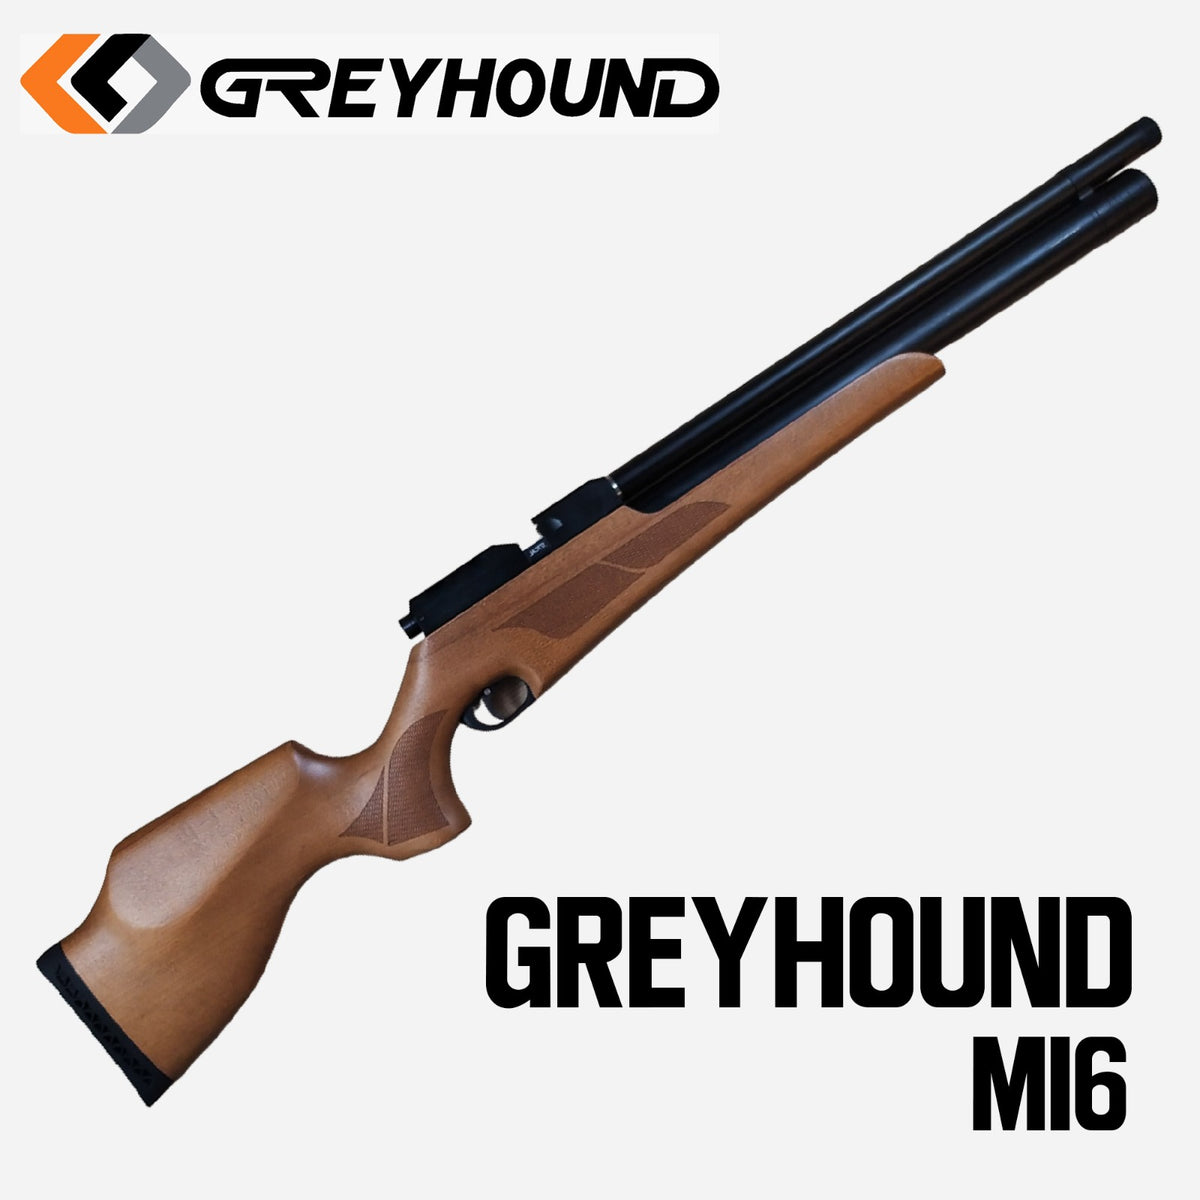 GREYHOUND M16